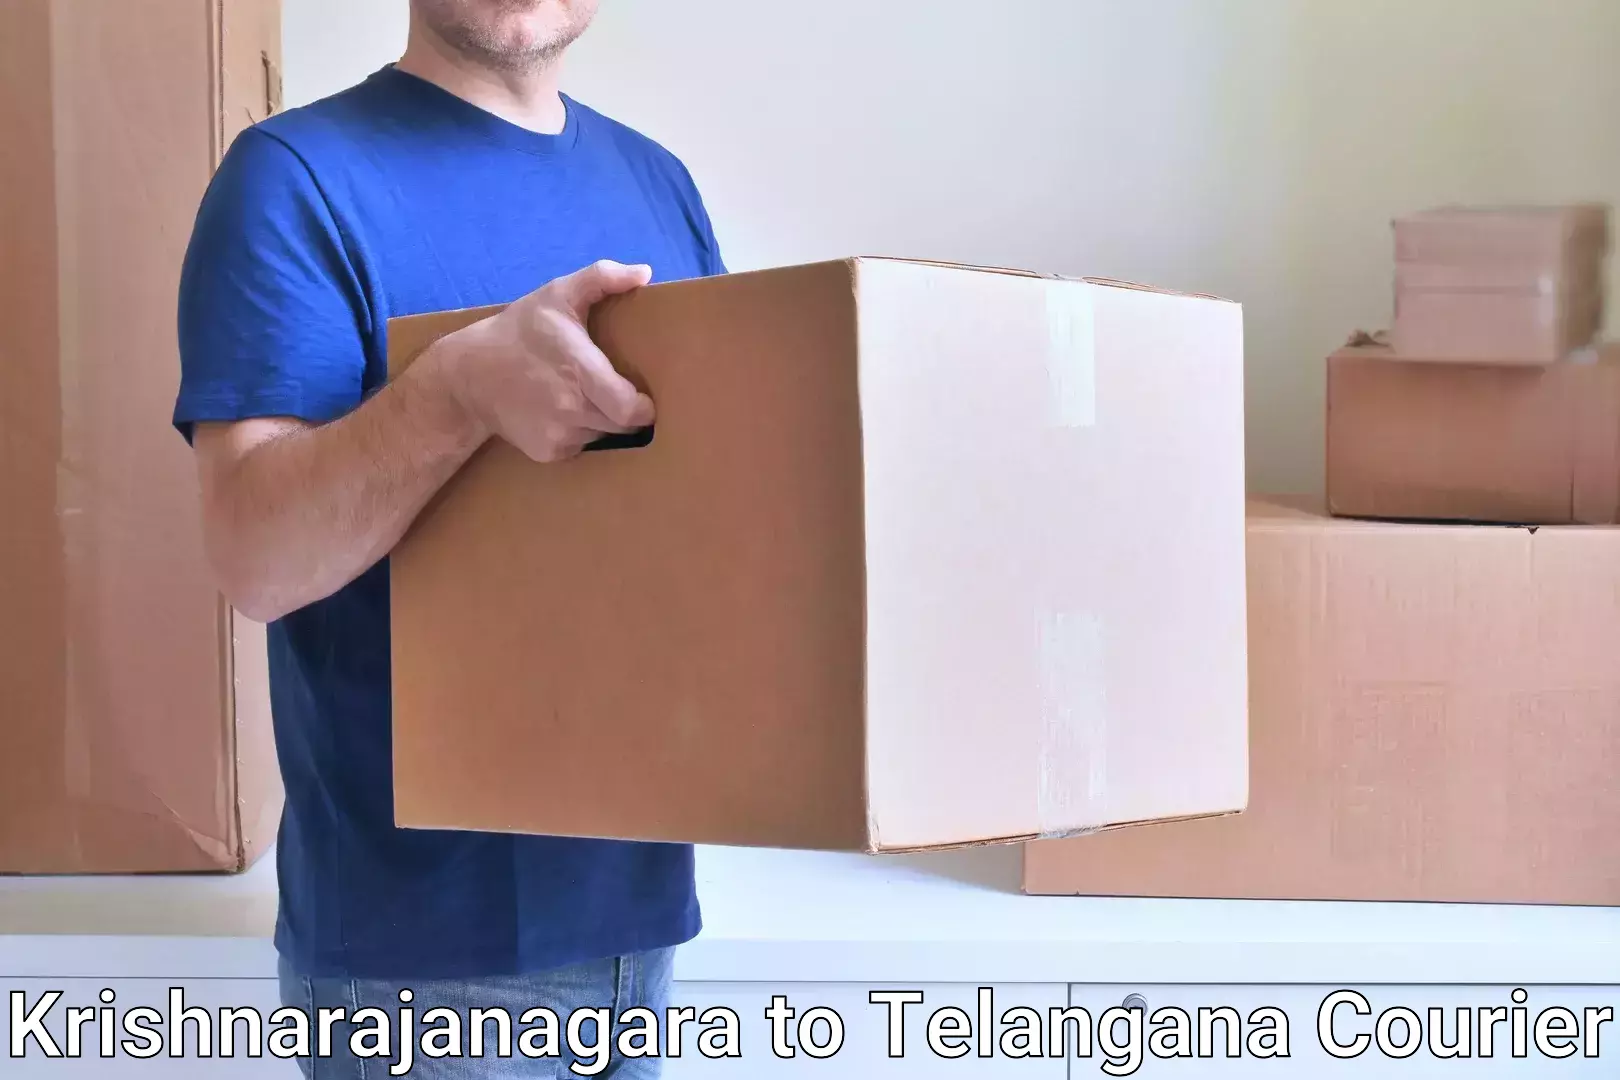 Door-to-door freight service Krishnarajanagara to Telangana